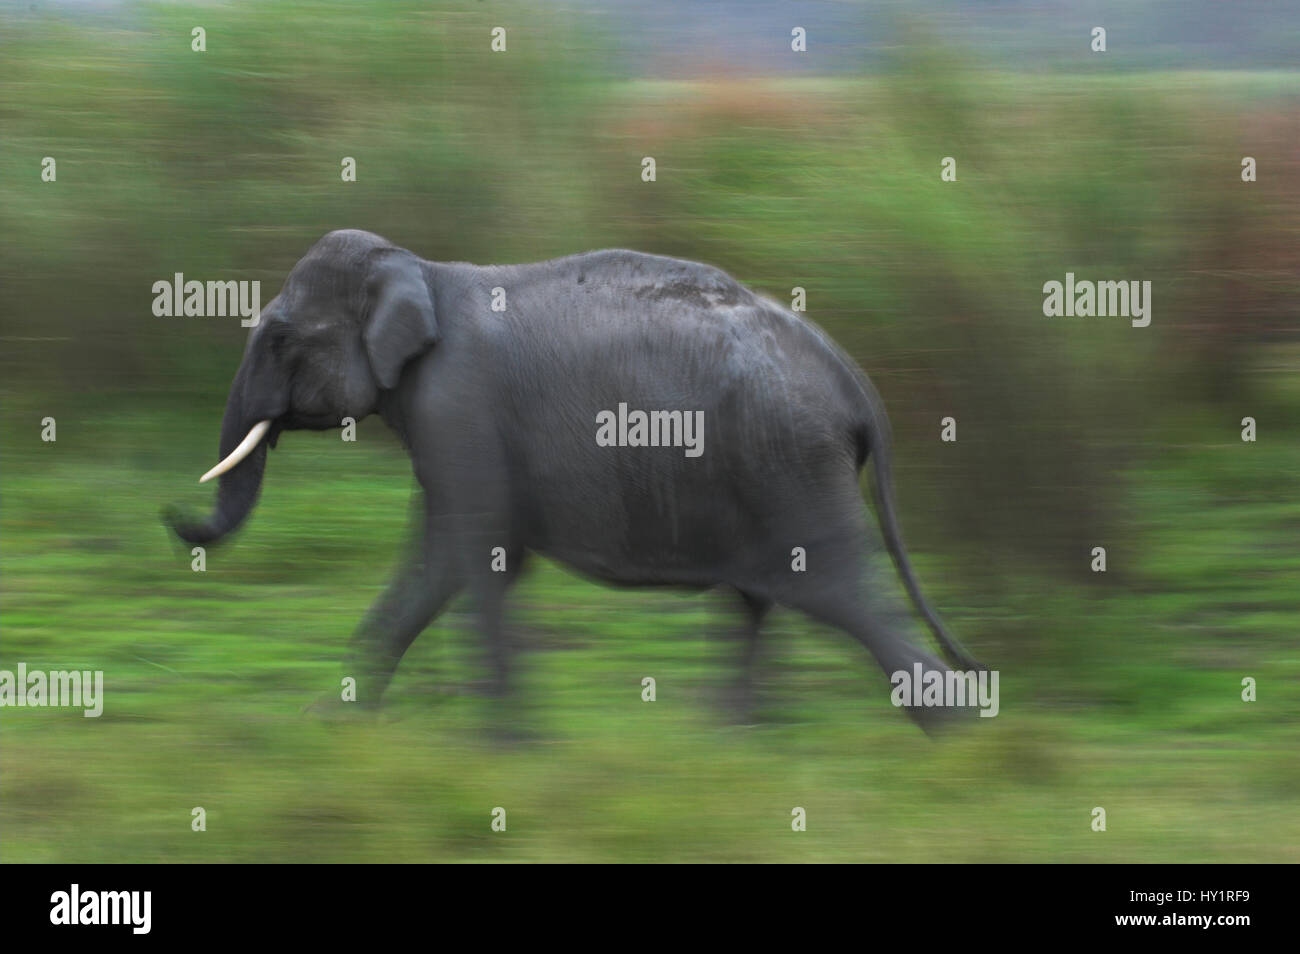 Wild Indian Elephant (Elephas maximus) running. Kaziranga National Park, Assam, India. Endangered species. Stock Photo